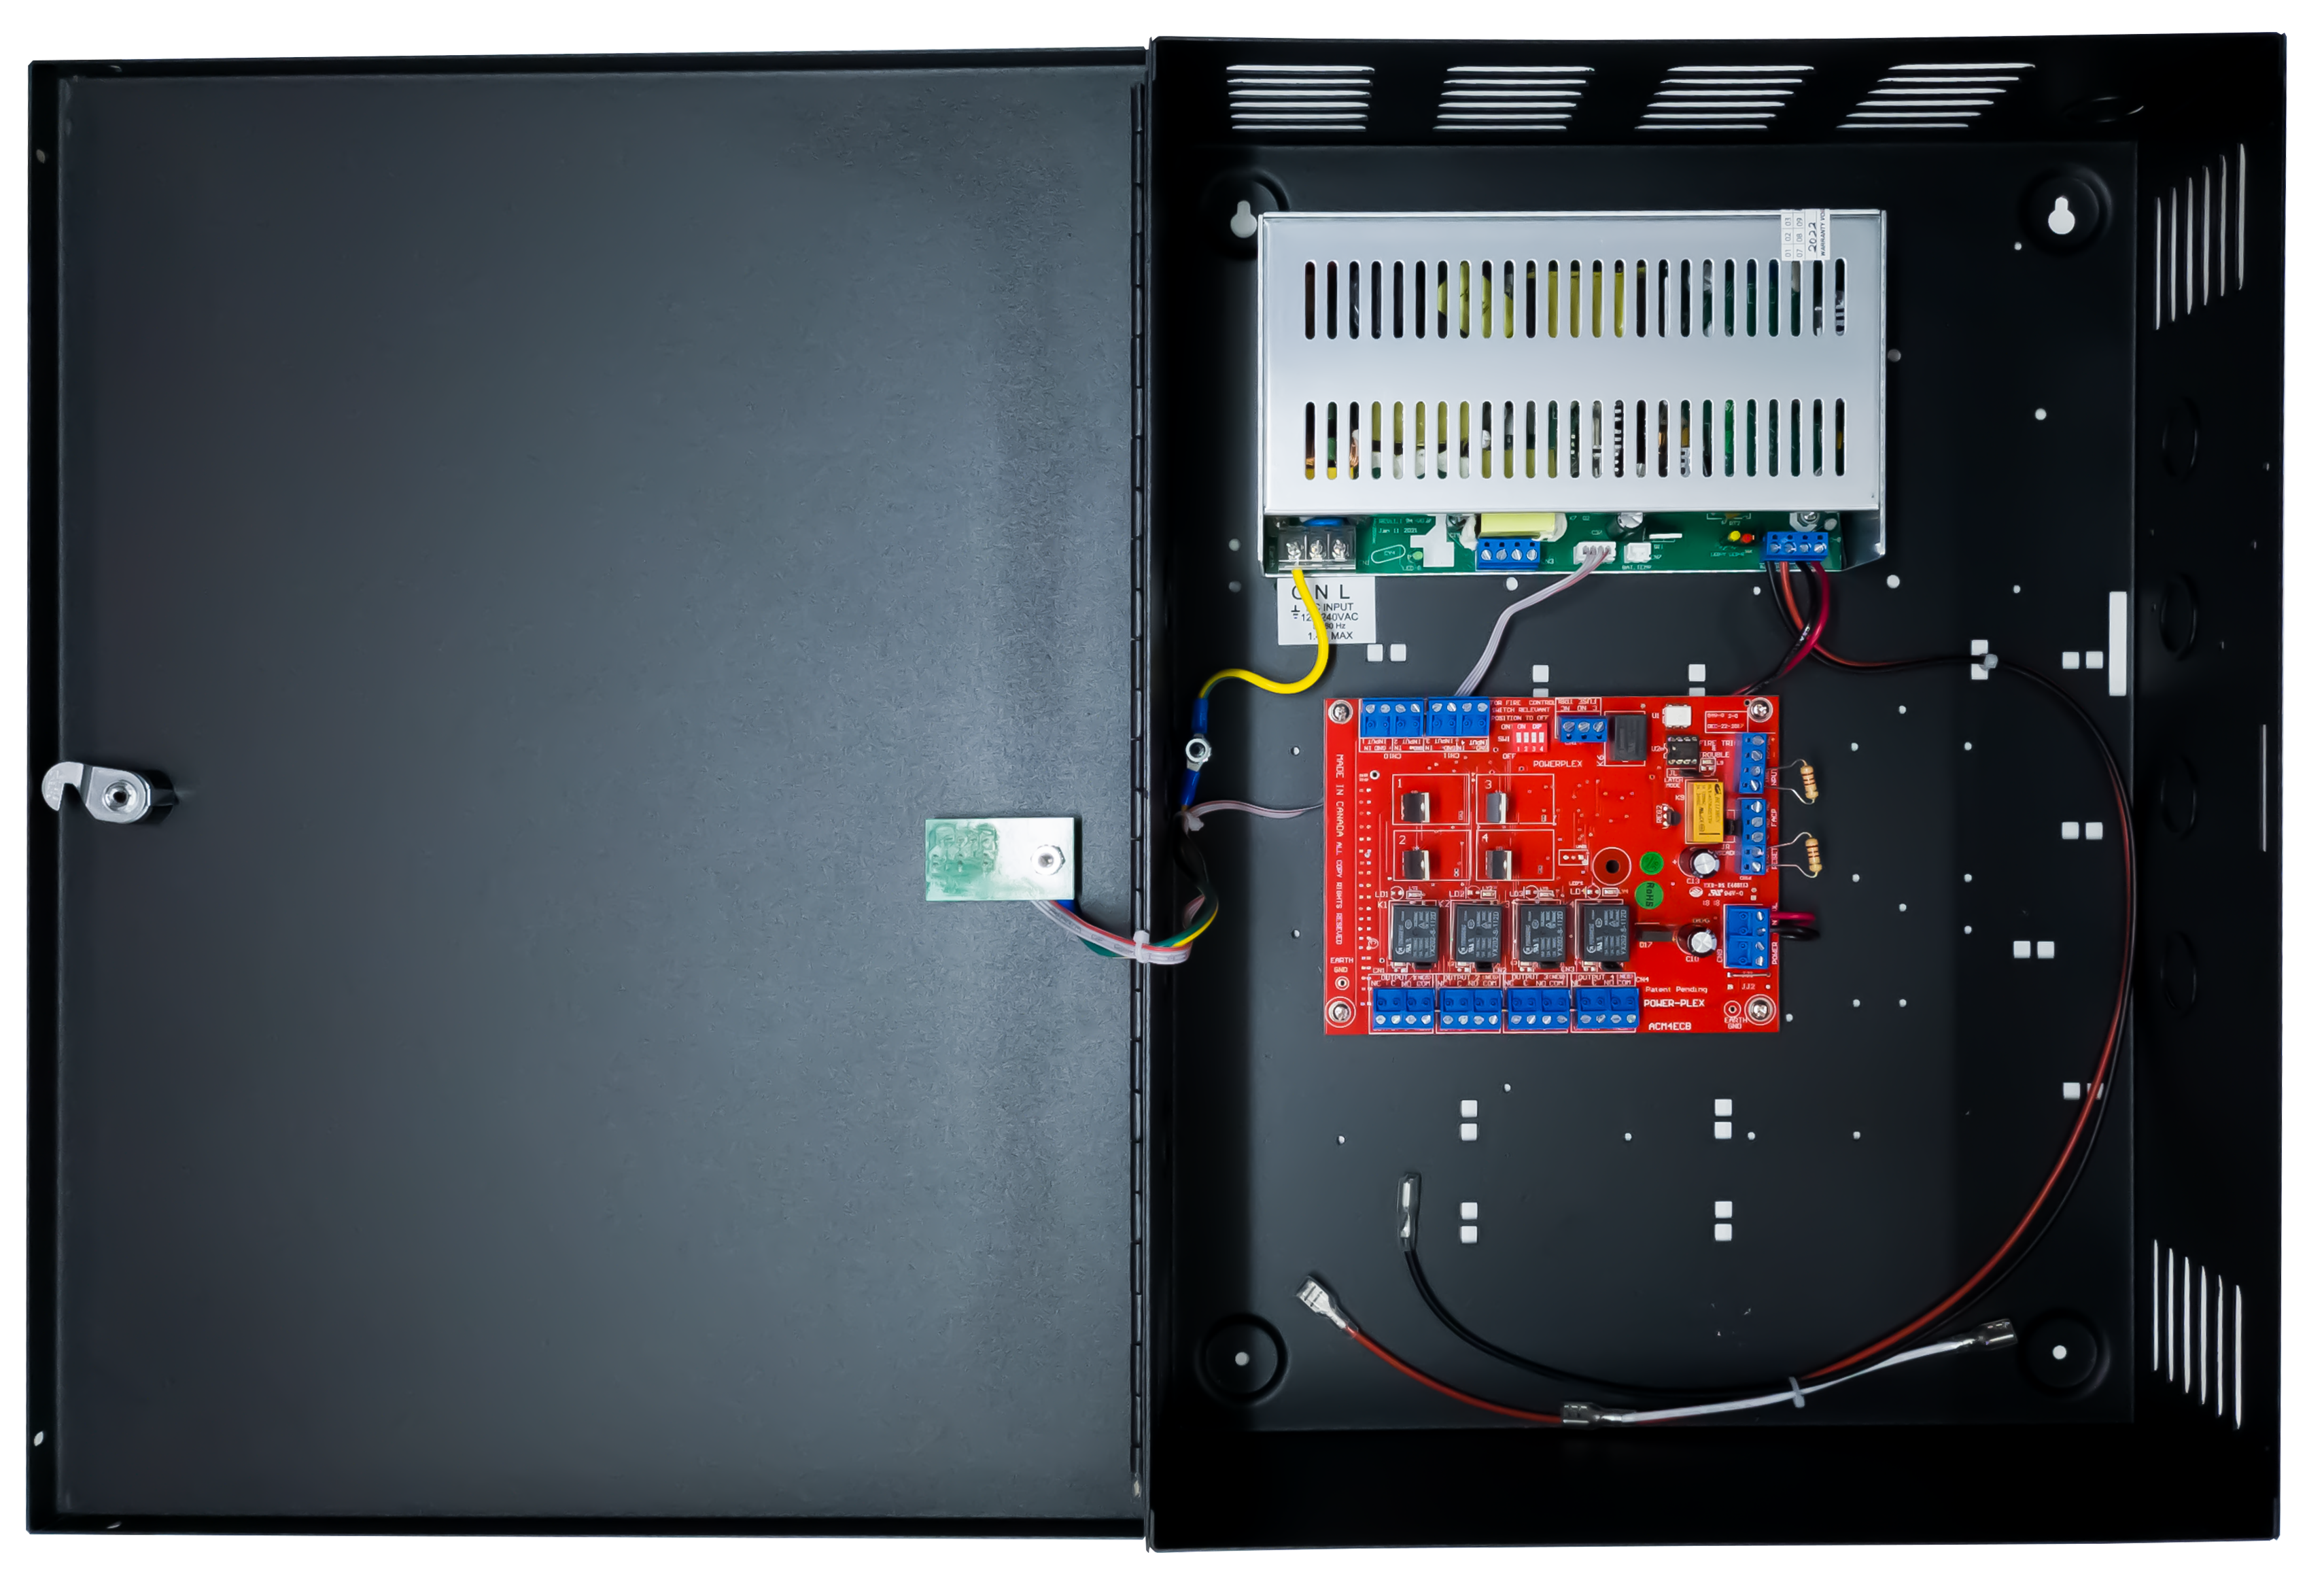 CM-800 Series: Interruptores basculantes - Interruptores para aplicaciones especiales - activación